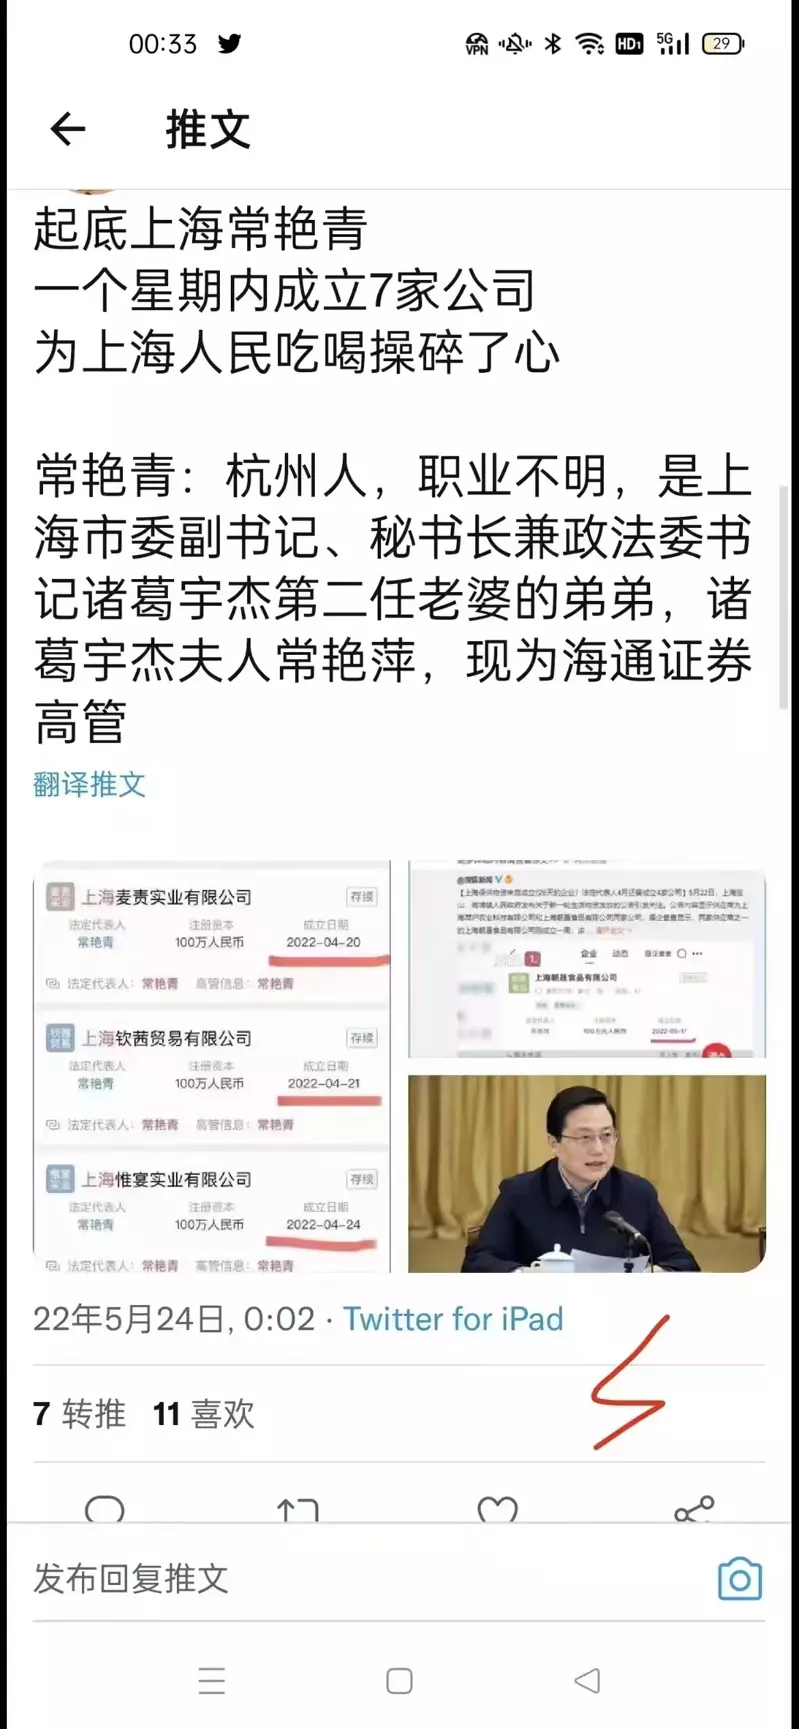 上海供货商法定代理人是上海市委副书记诸葛宇杰的妻弟常艳青